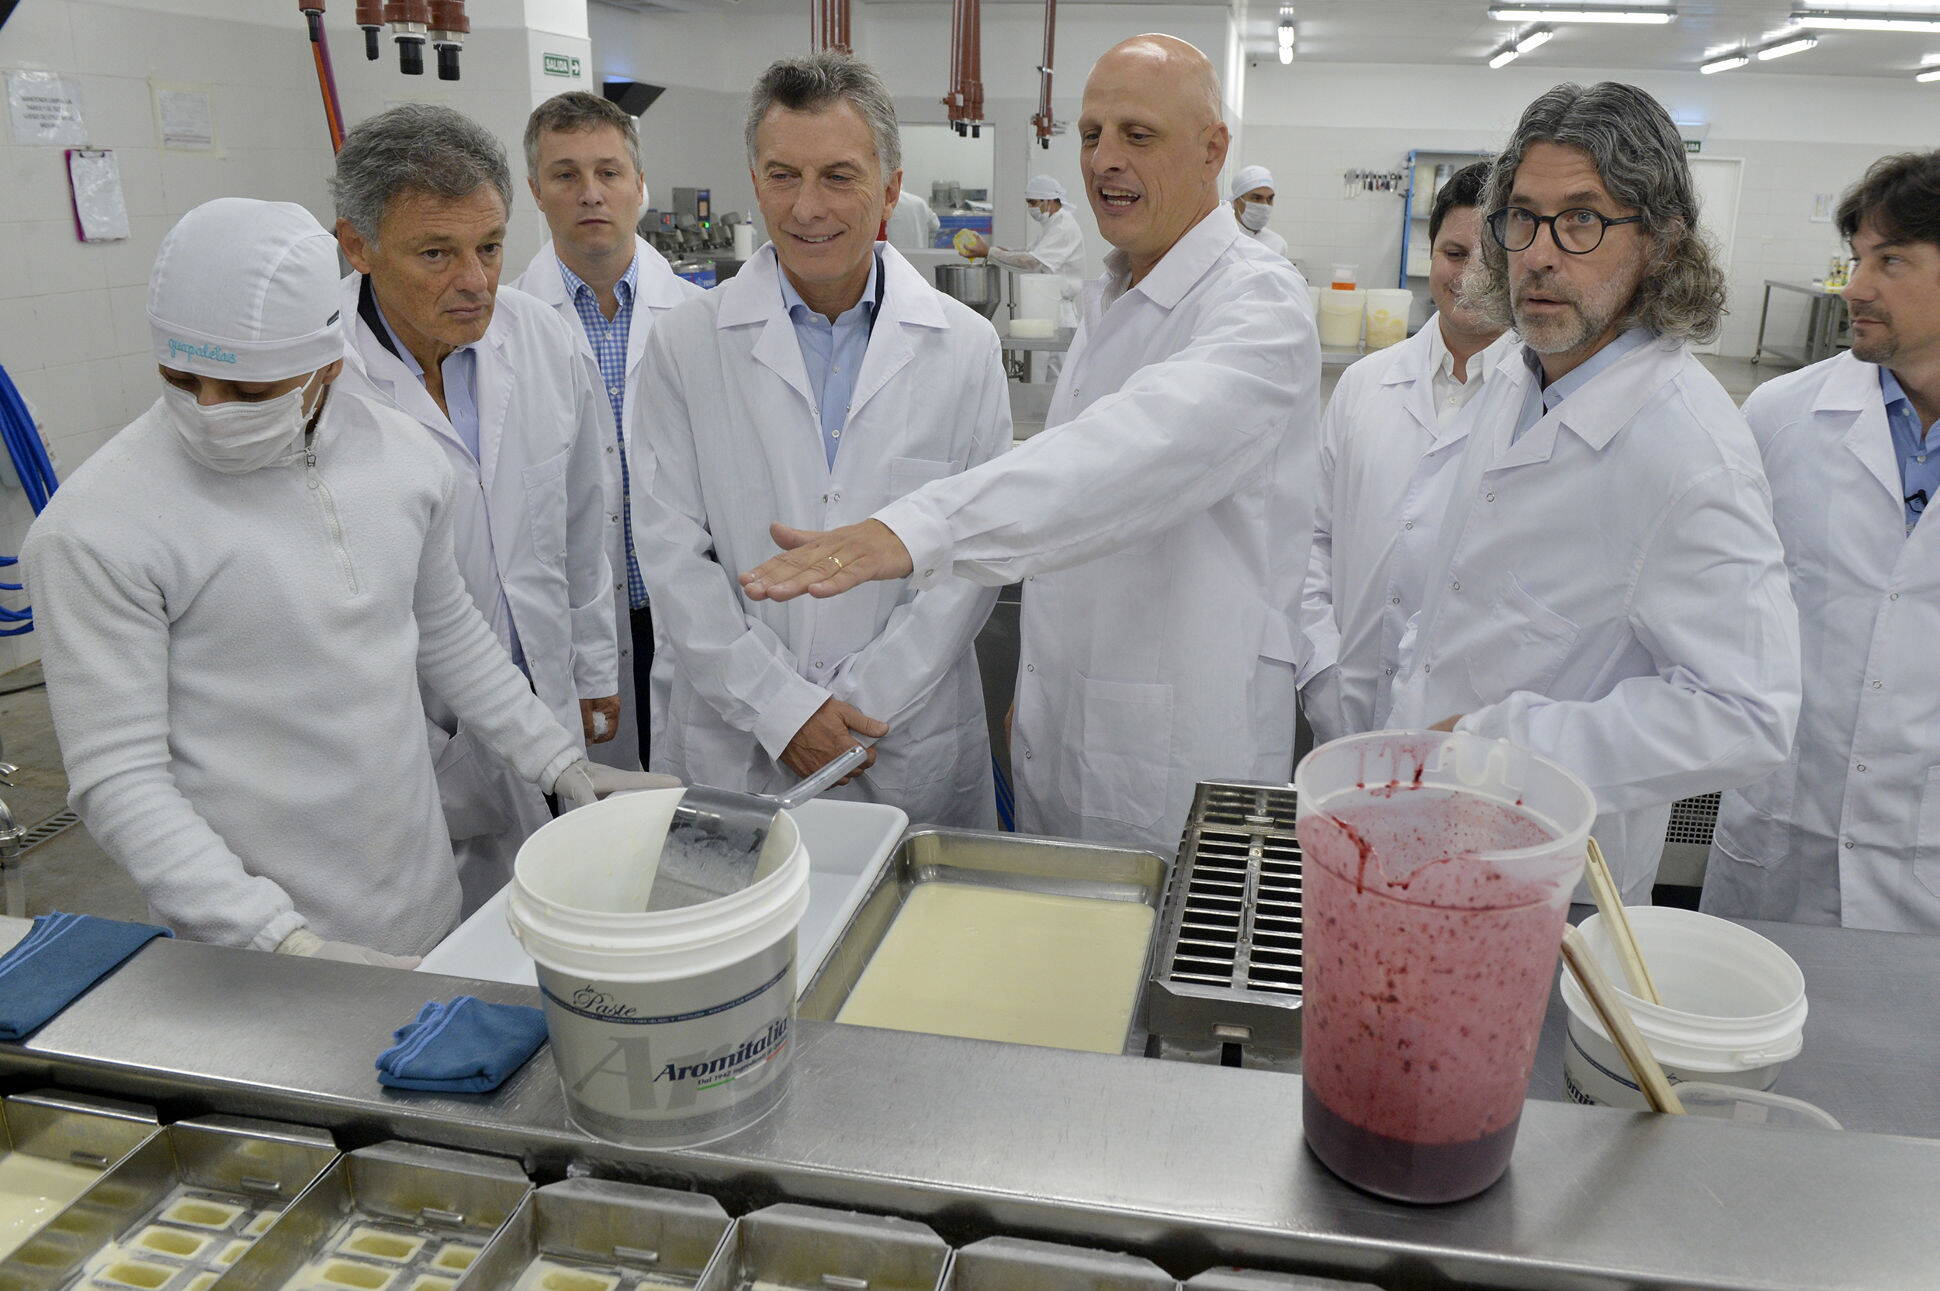 El presidente Macri visitó una PyME que creció en un año con apoyo del Estado